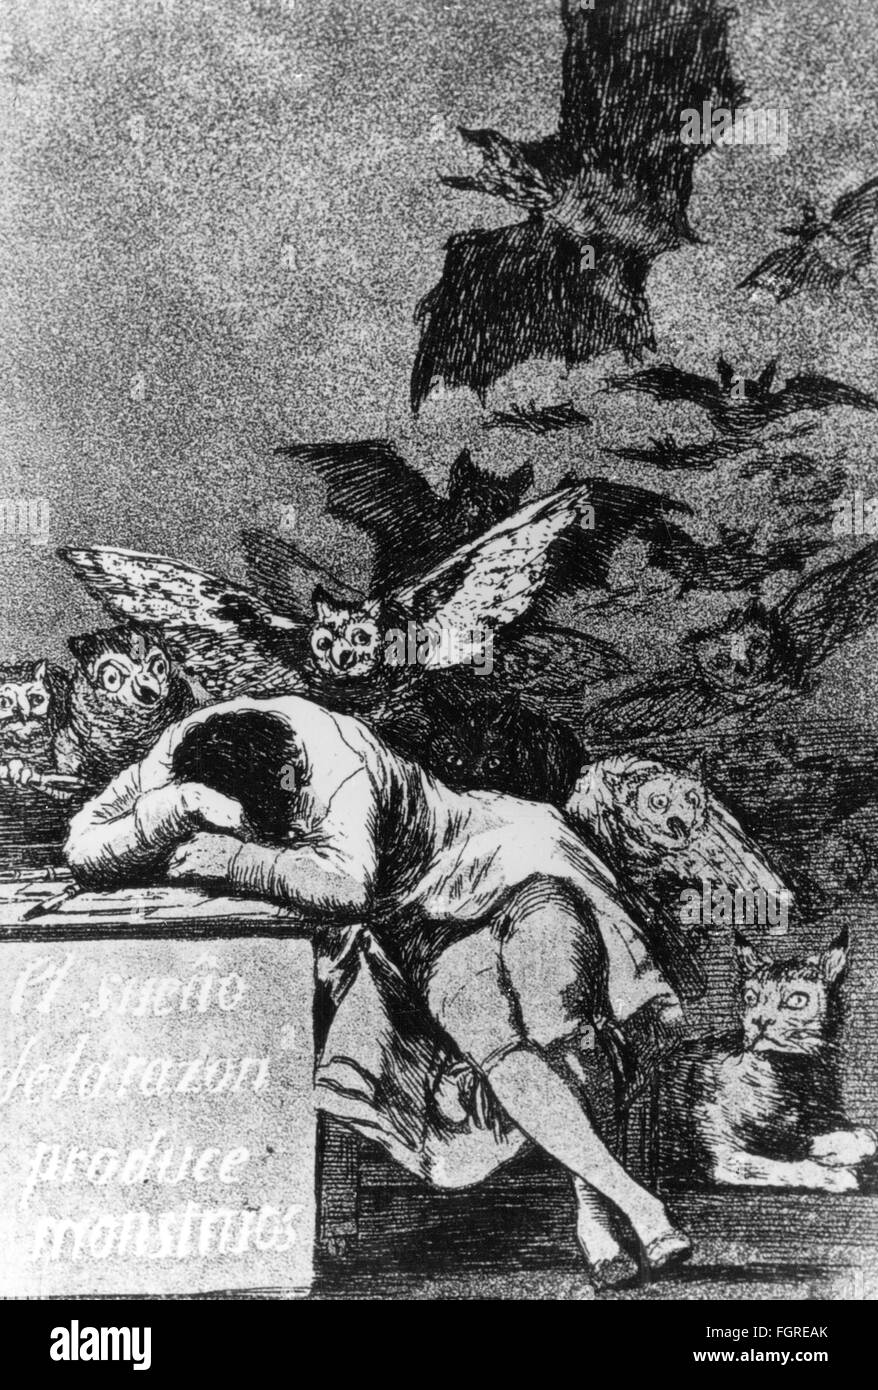 Belle arti, Goya, Francisco de (1746 - 1828), grafica, 'El sueno de la razon produce mostres' (il sonno della ragione produce Mostri), Capricho numero 43, 1797 / 1798, acquaforte, acquatint, 21.3 x 15.1 cm, Museo del Prado, Madrid, diritti aggiuntivi-clearences-non disponibile Foto Stock